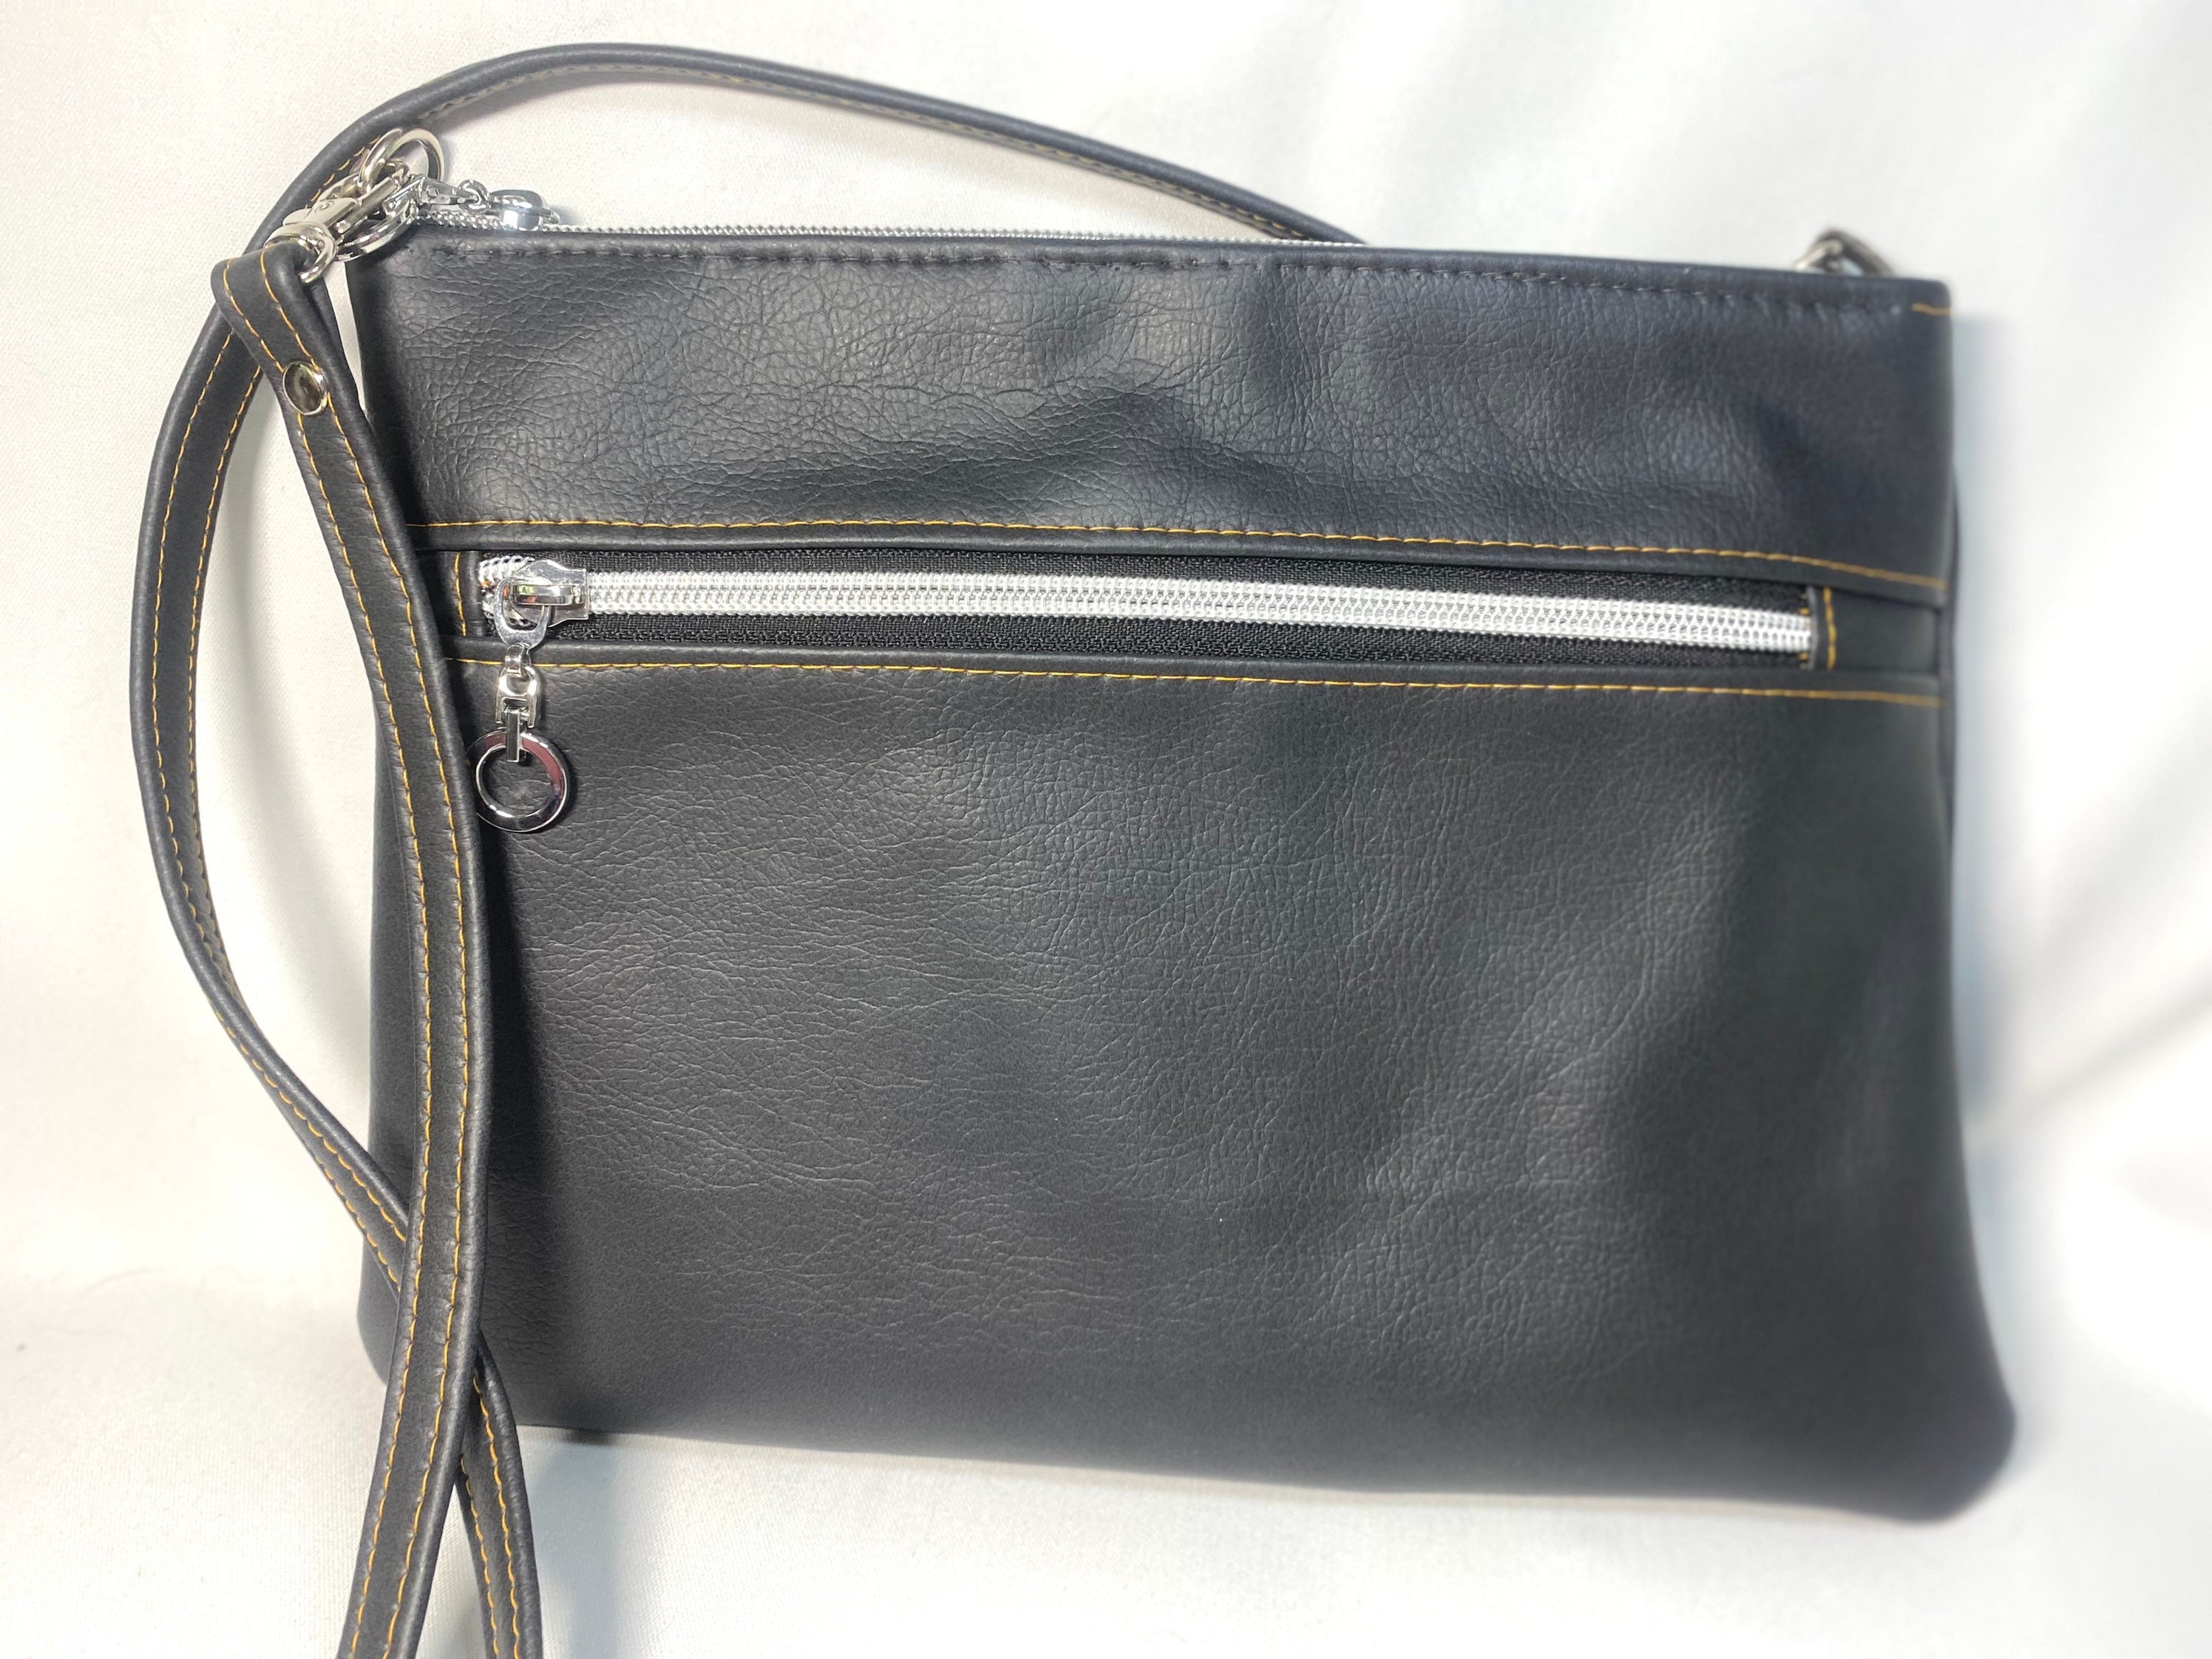 Smrinog Adjustable Bag Straps Nylon Wide Shoulder Belt Replacement Handbag Purse Straps, Women's, Size: One size, Green